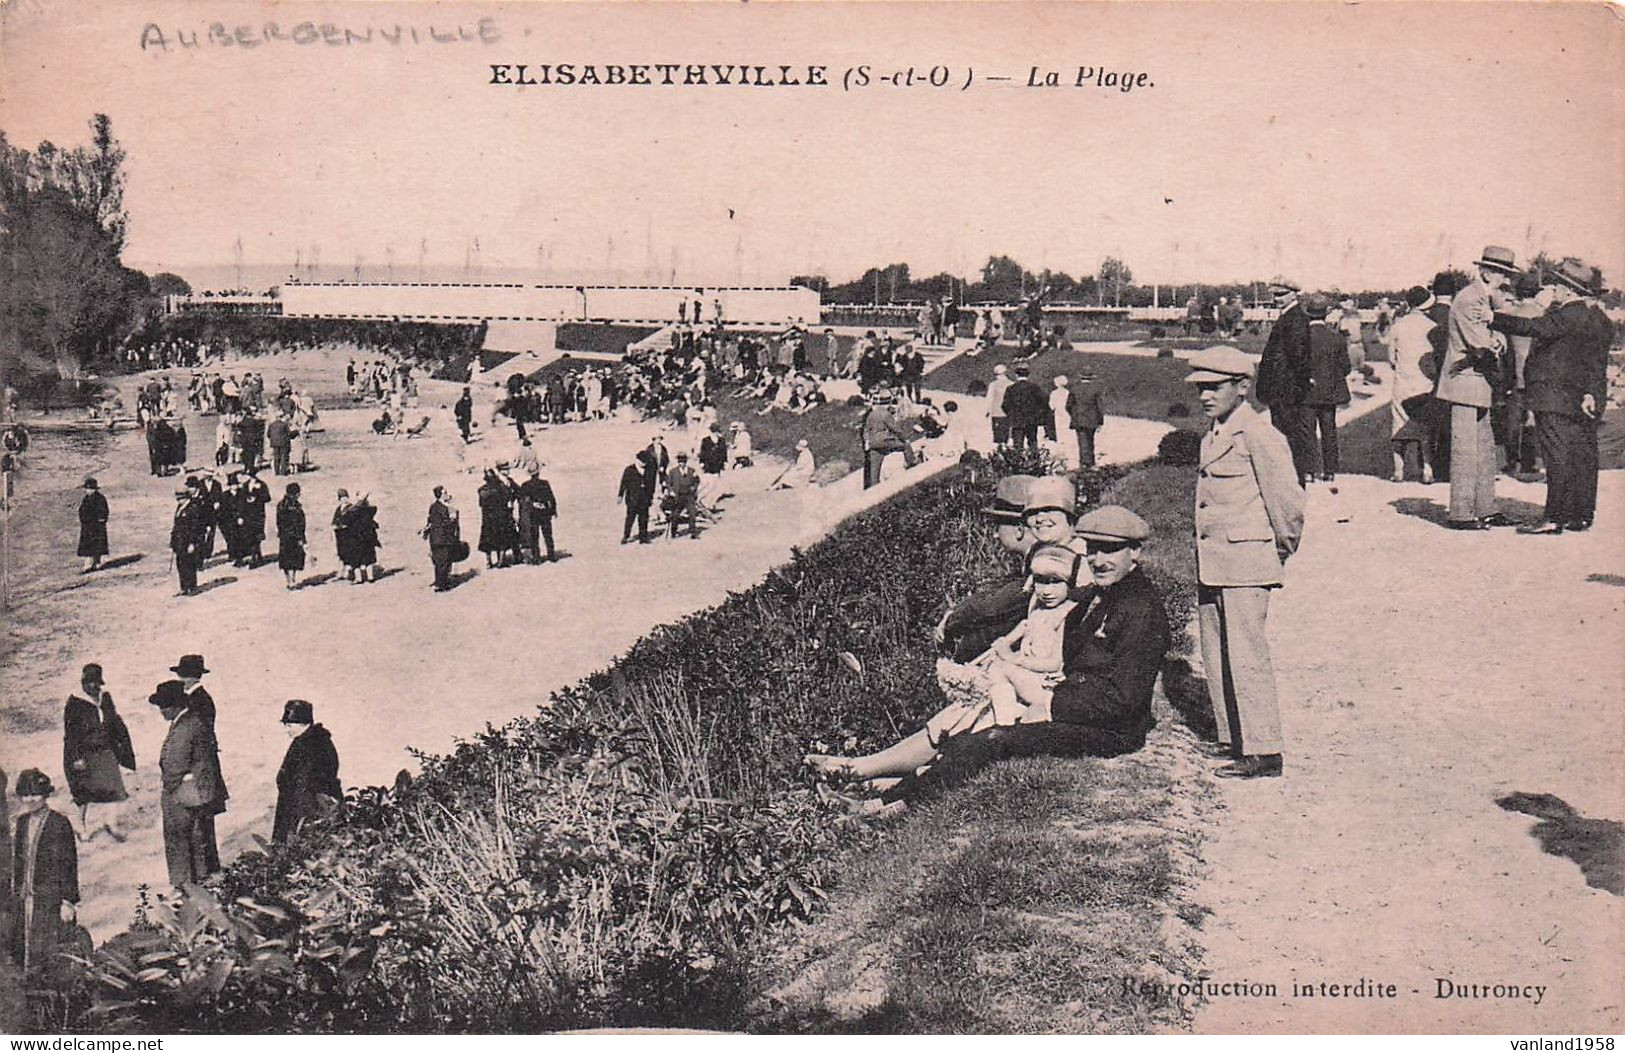 ELISABETHVILLE-la Plage - Aubergenville